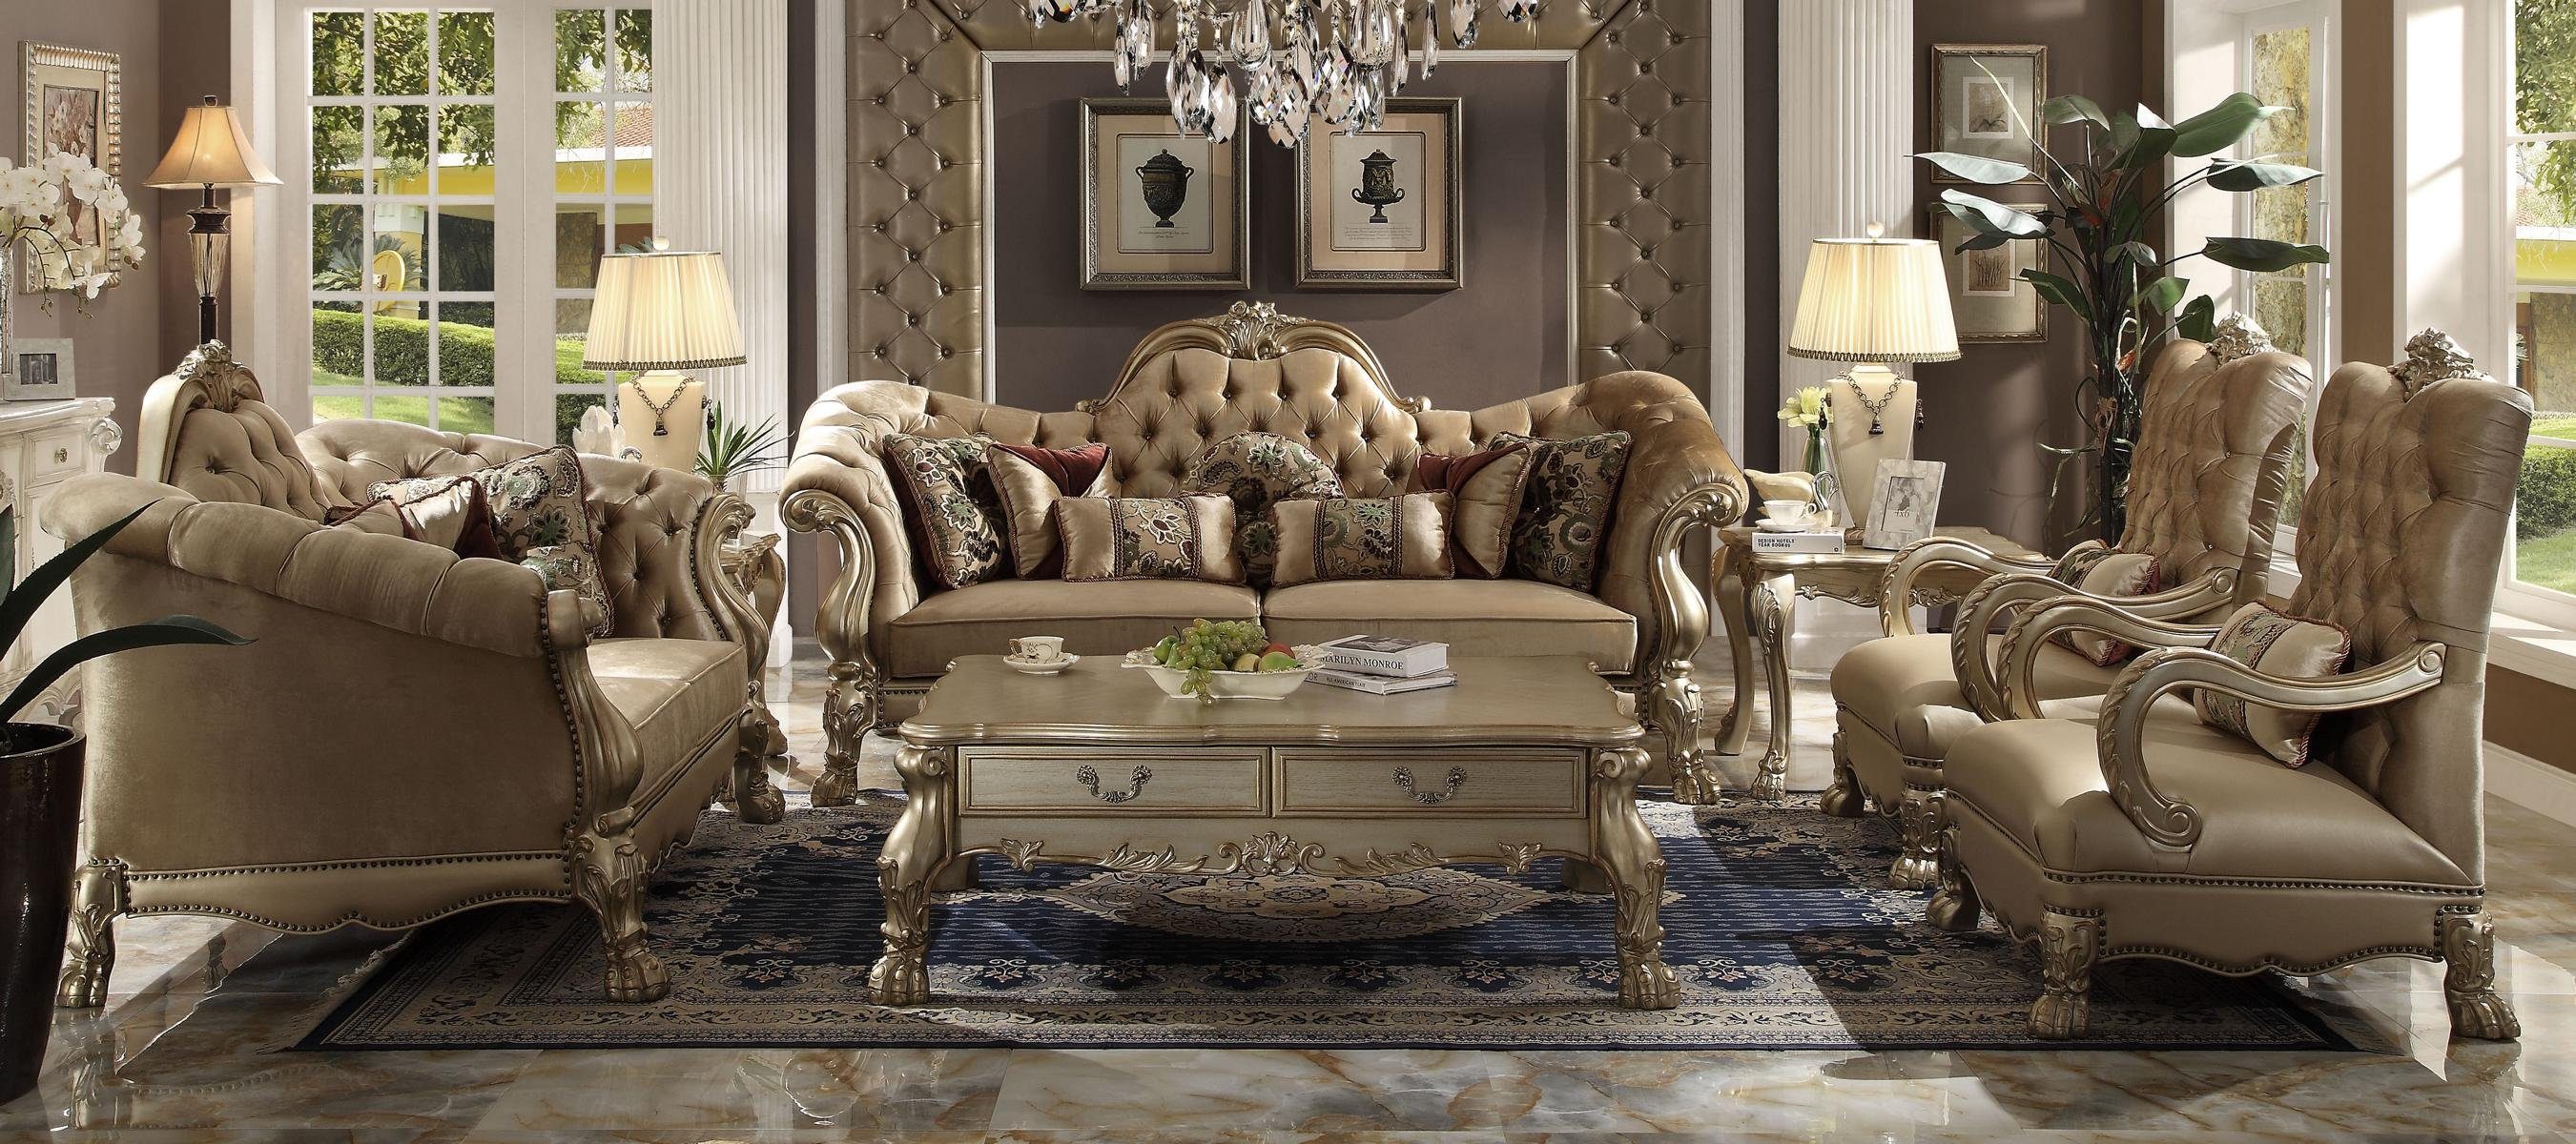 JVmoebel Wohnzimmer-Set, Luxus Sofagarnitur 3+2+1+1 Sitzer Set Sofa Polster Couchen Couch